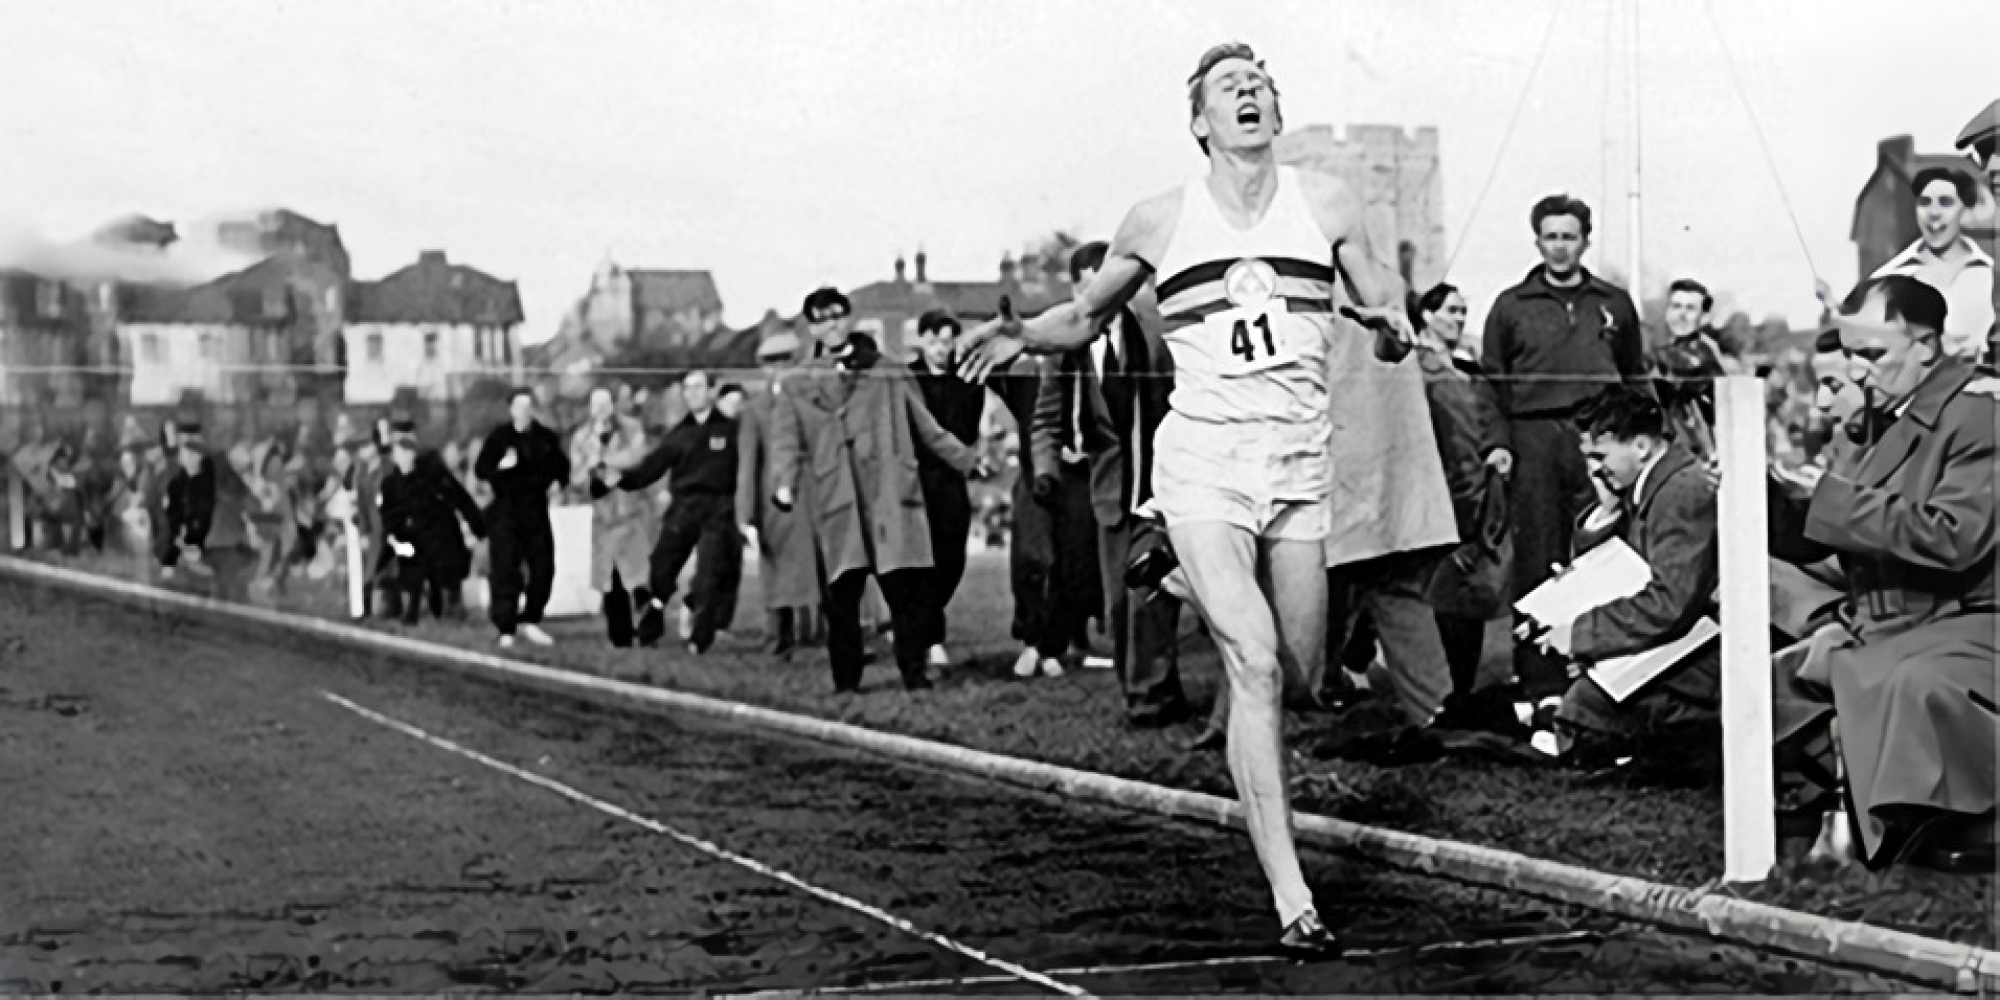 Р. Баннистер установил рекорд среди бегунов, который впоследствии назвали «четырехминутной милей»